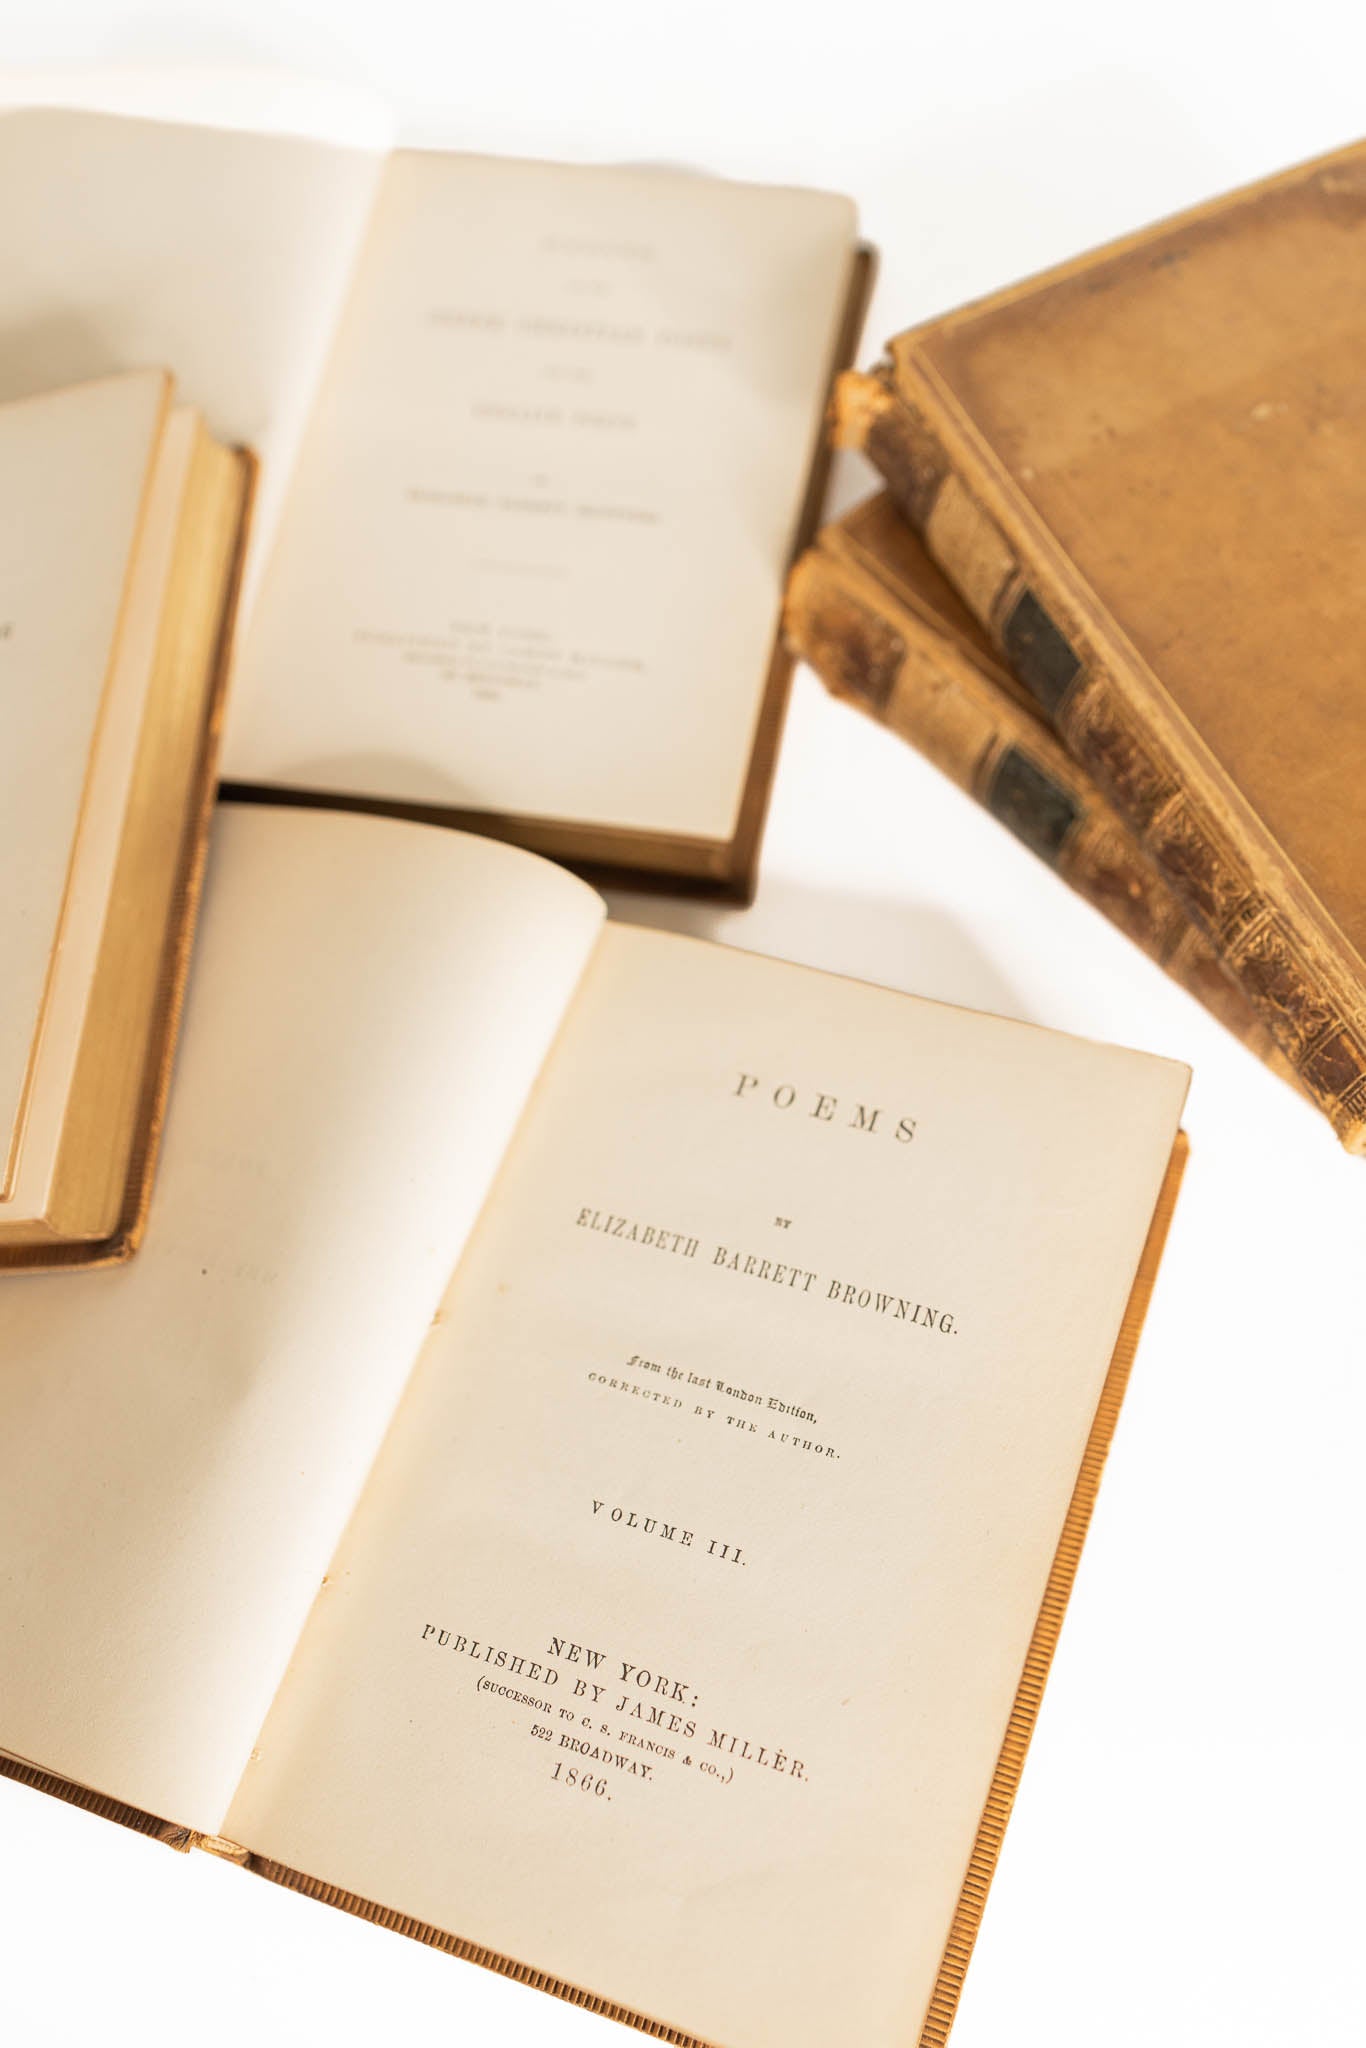 Set of 5 Poems of Elizabeth Browning 1866